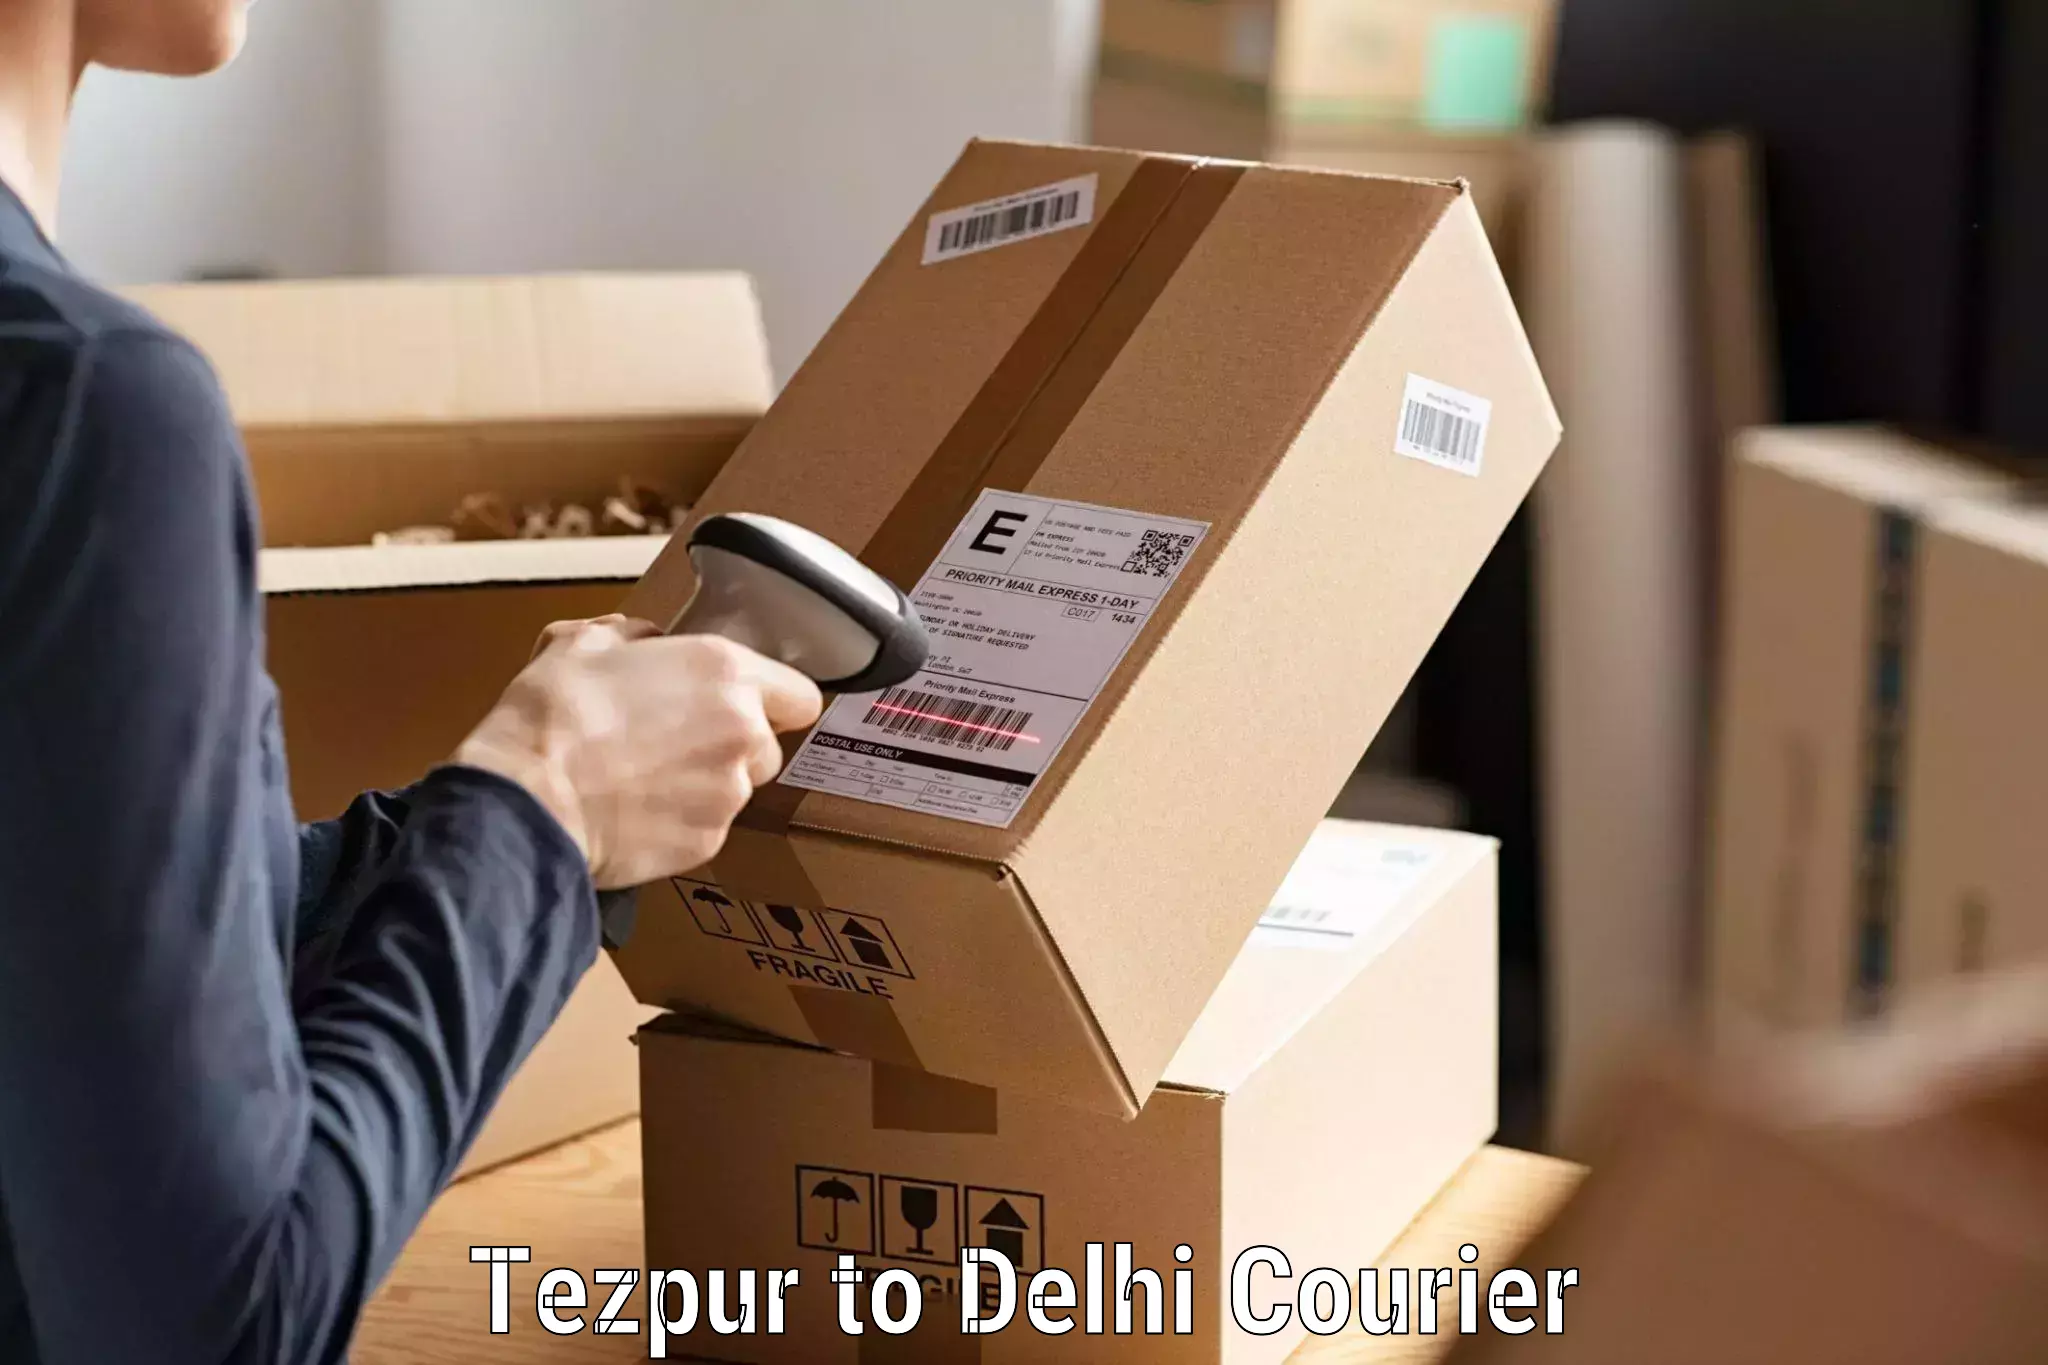 Premium delivery services Tezpur to Delhi